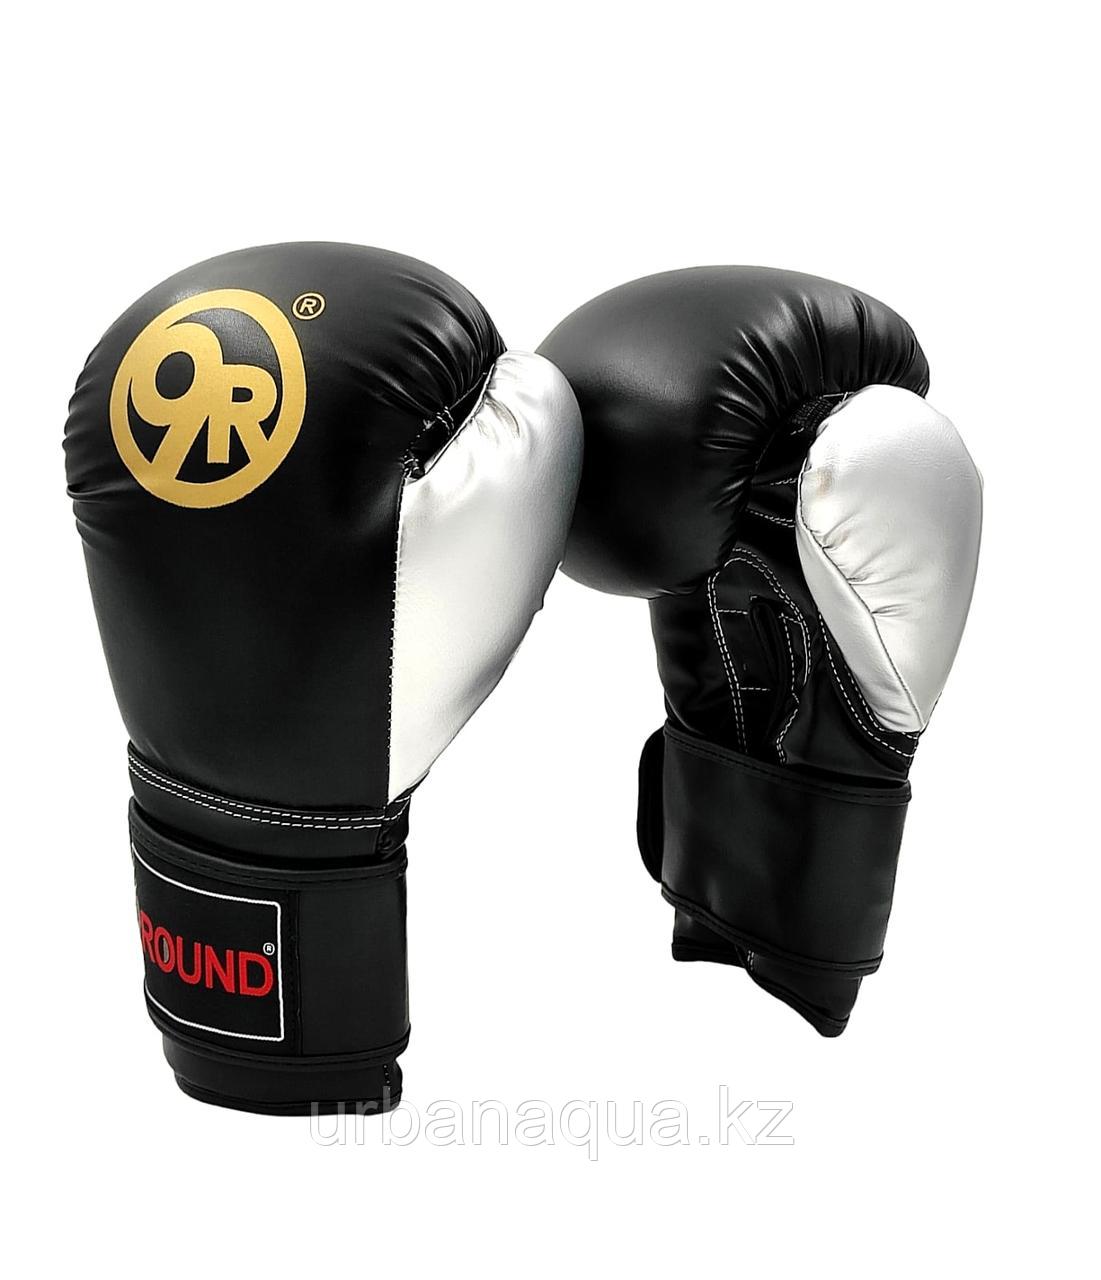 Перчатки боксерские 9R